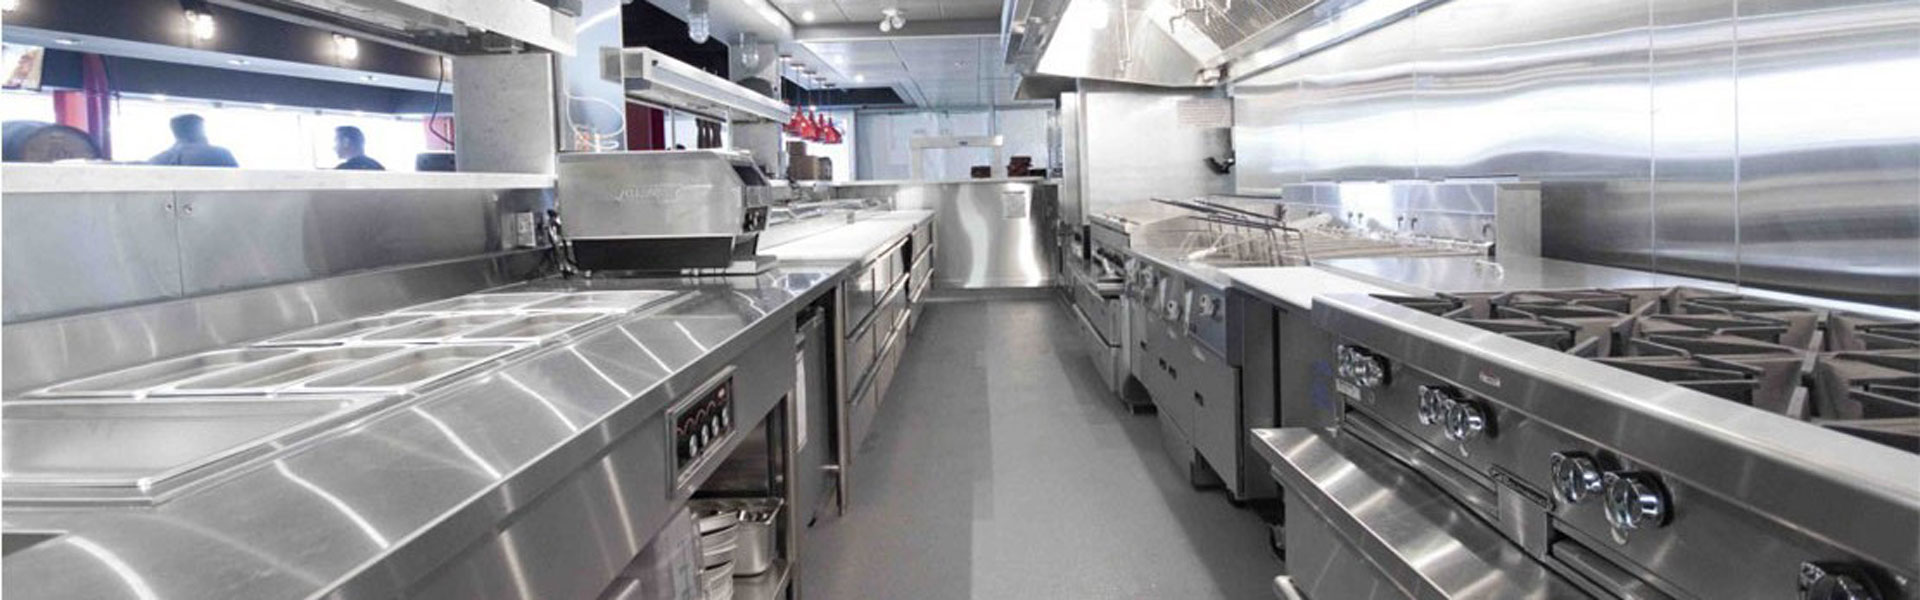 استاندارد طراحی آشپزخانه های صنعتی 